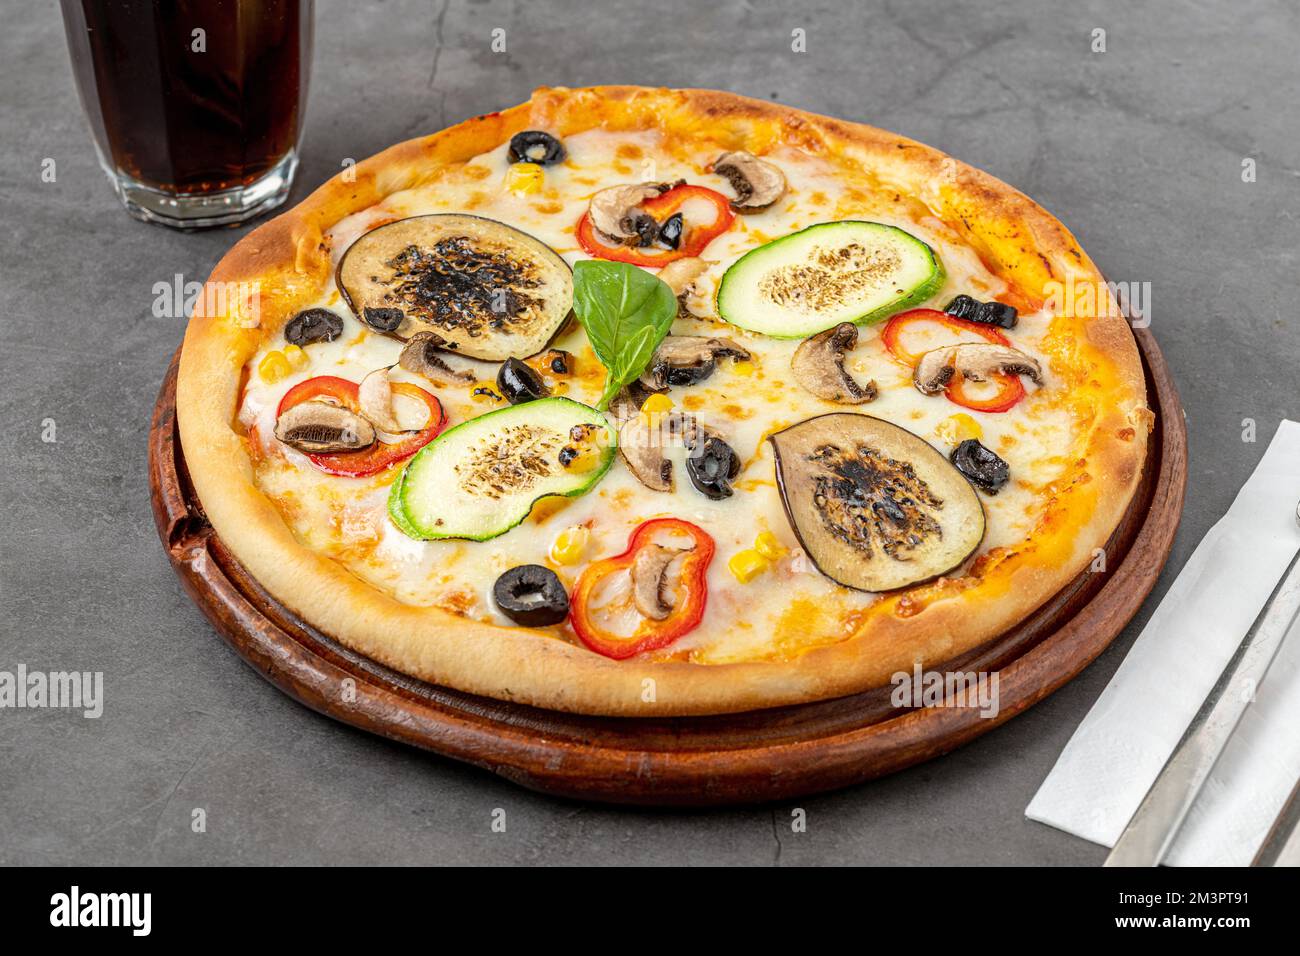 Pizza végétarienne avec aubergines, courgettes et champignons sur une table en pierre sombre Banque D'Images